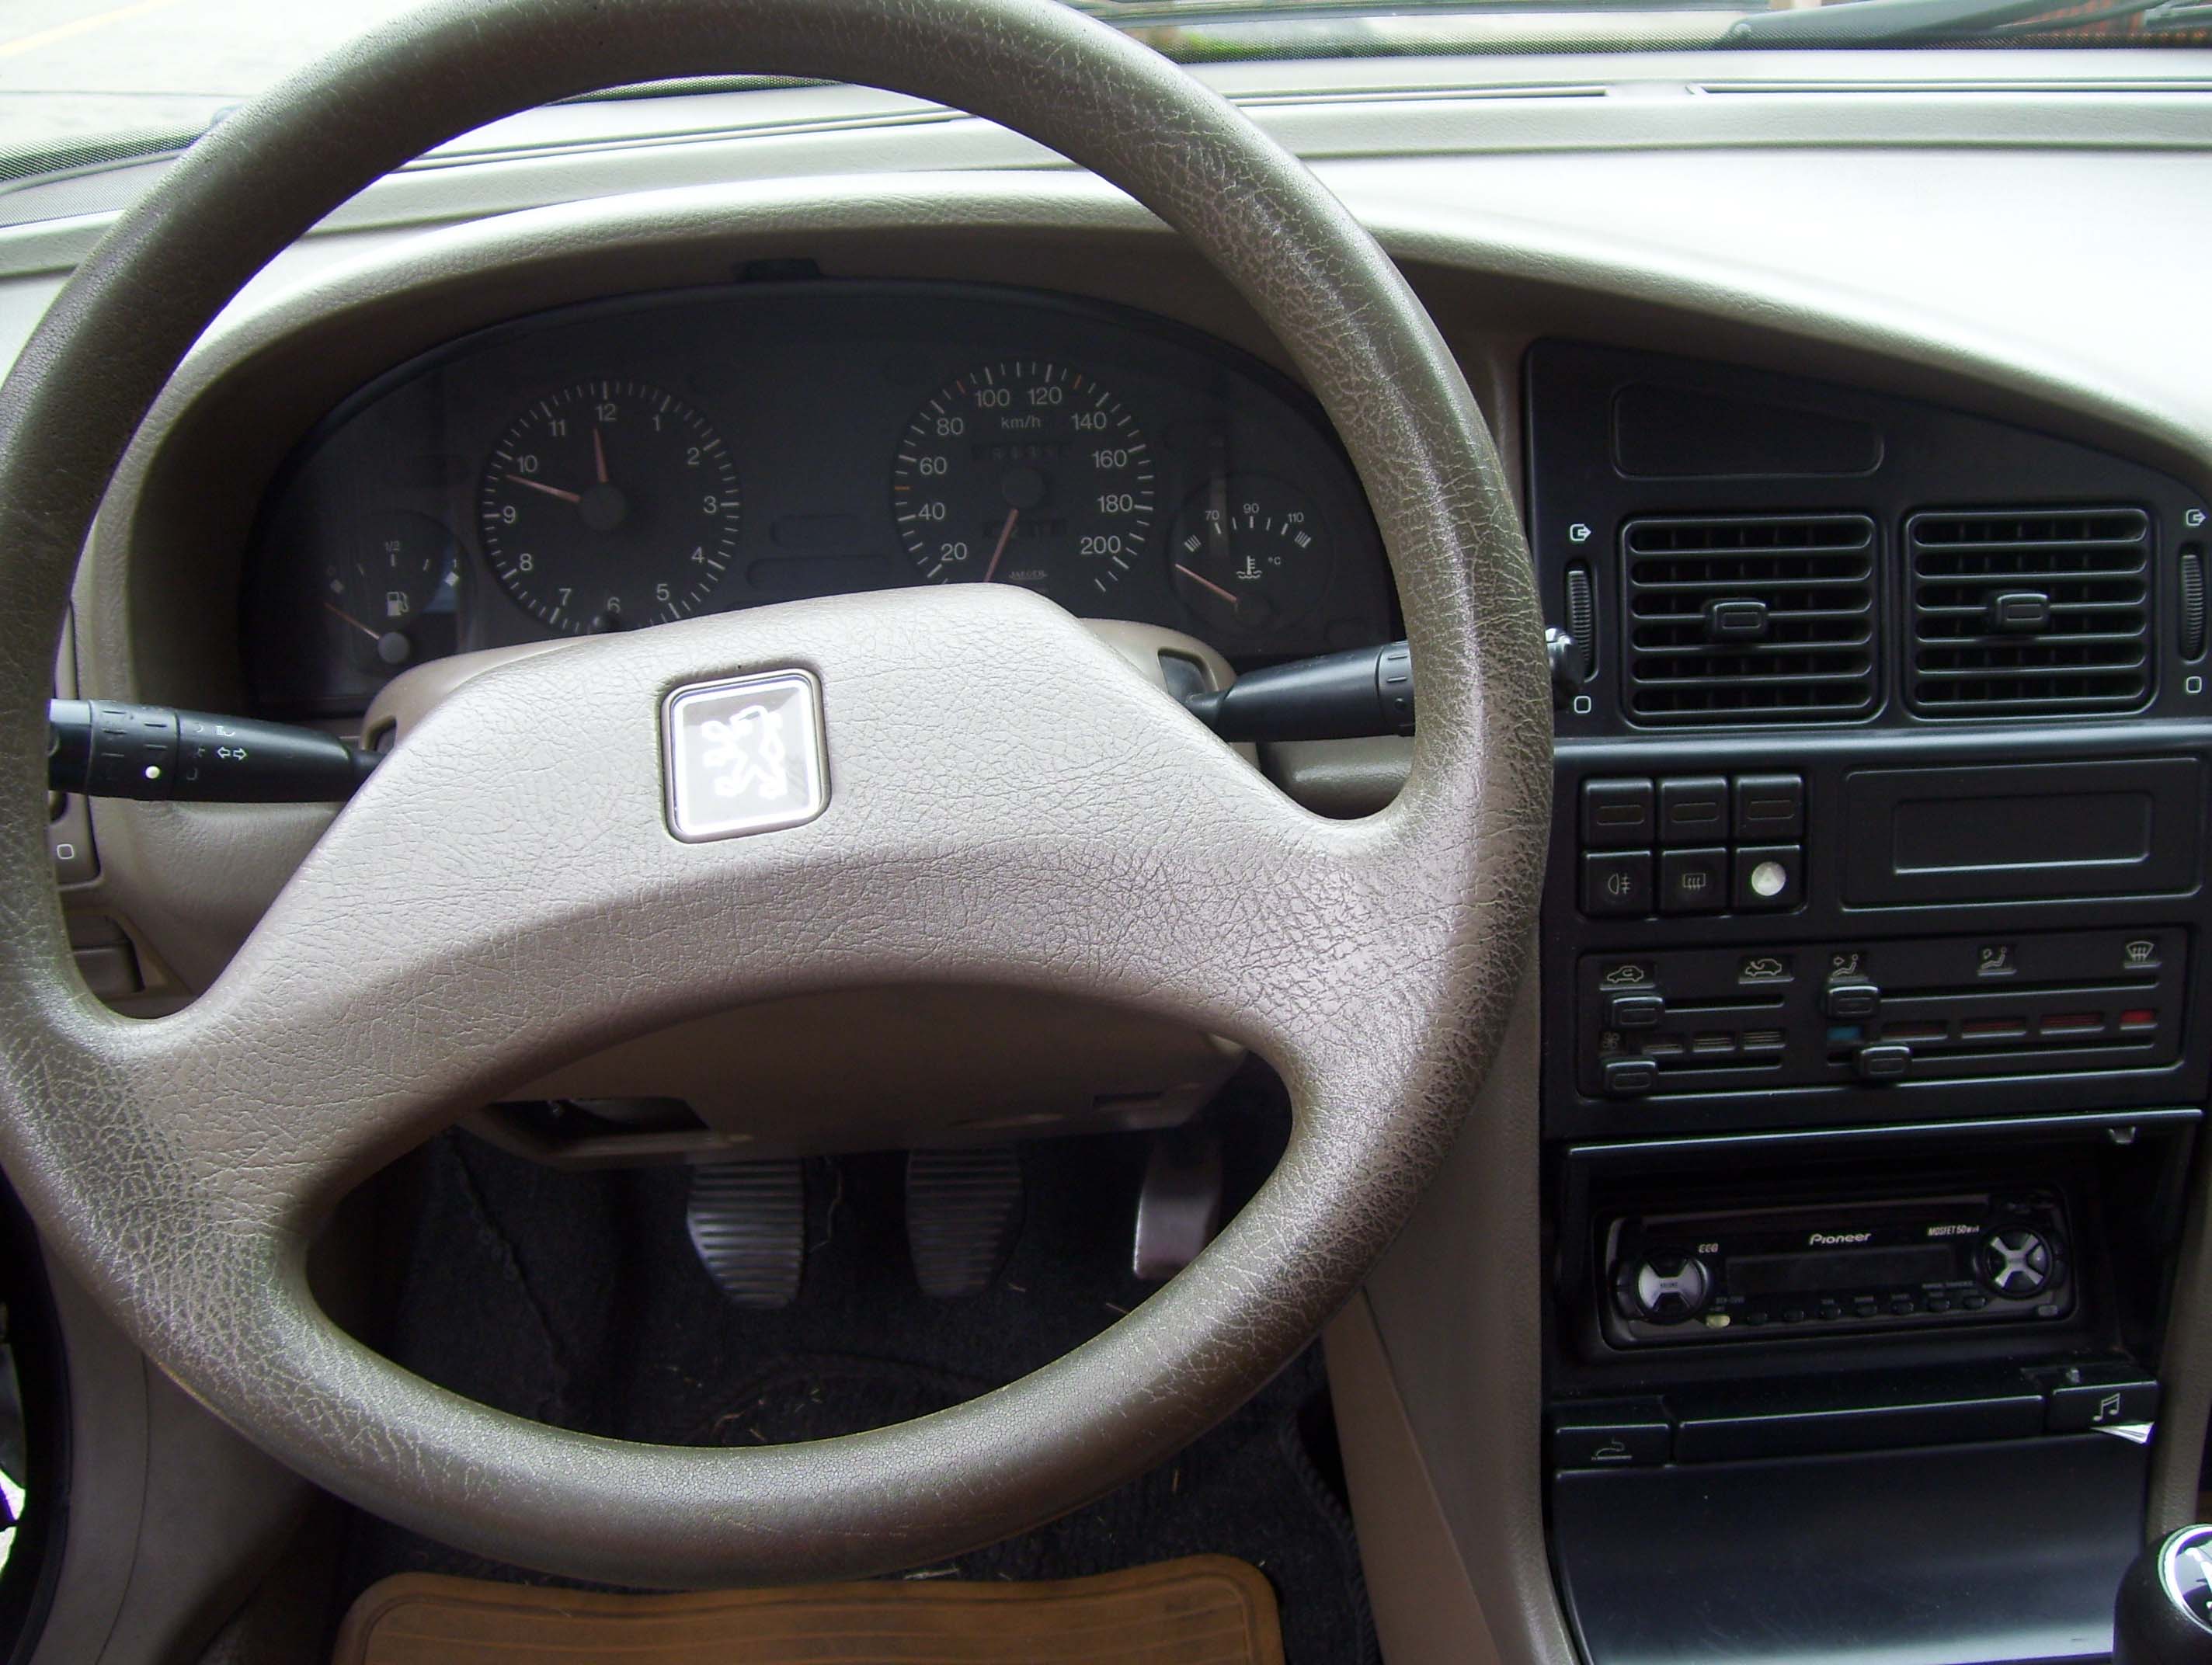 Peugeot 405 GL